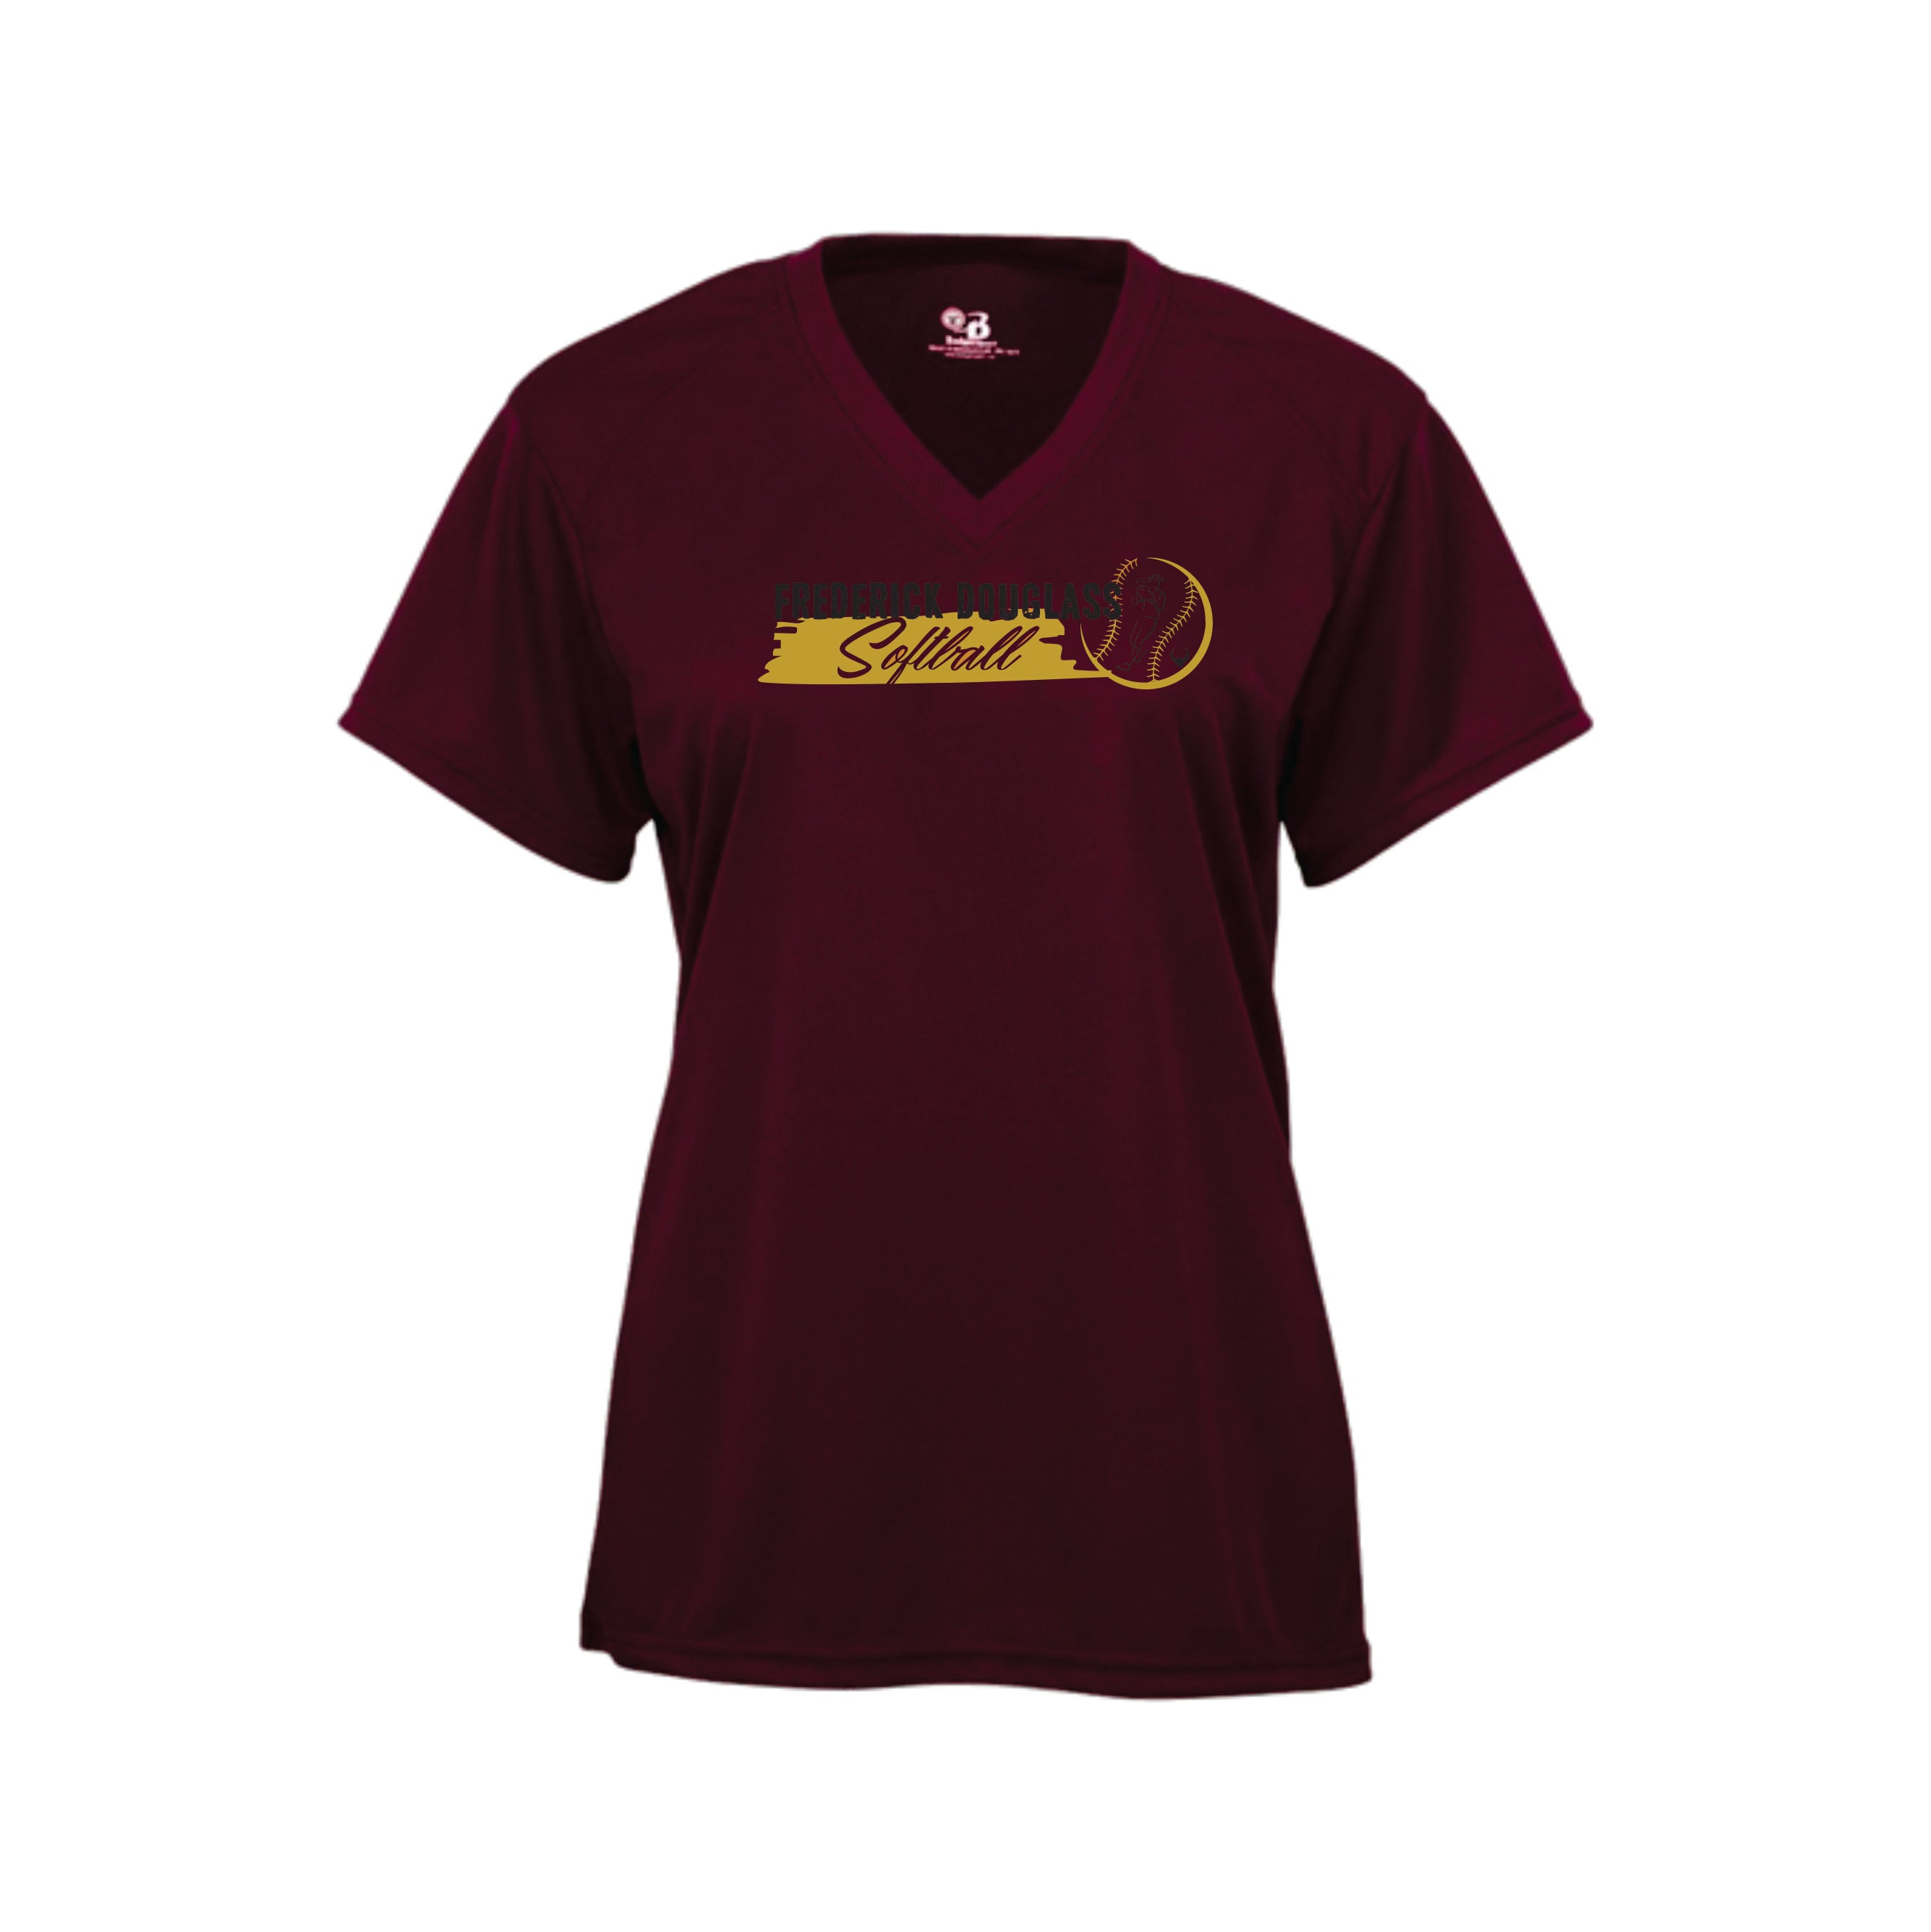 Douglass Shirt - Softball - Unisex